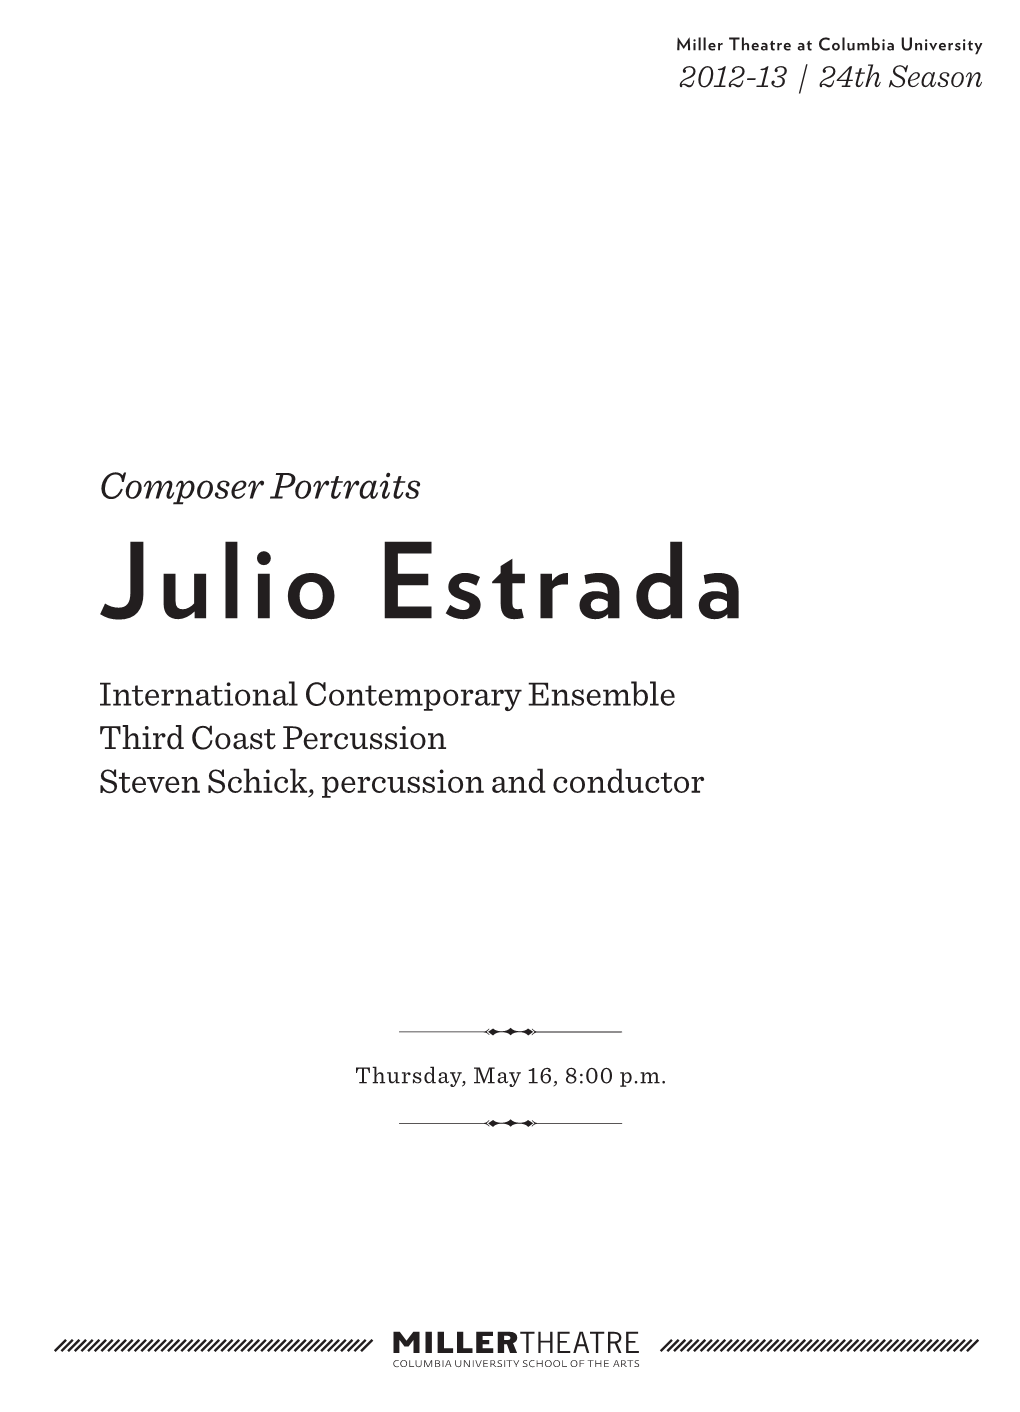 Julio Estrada International Contemporary Ensemble Third Coast Percussion Steven Schick, Percussion and Conductor